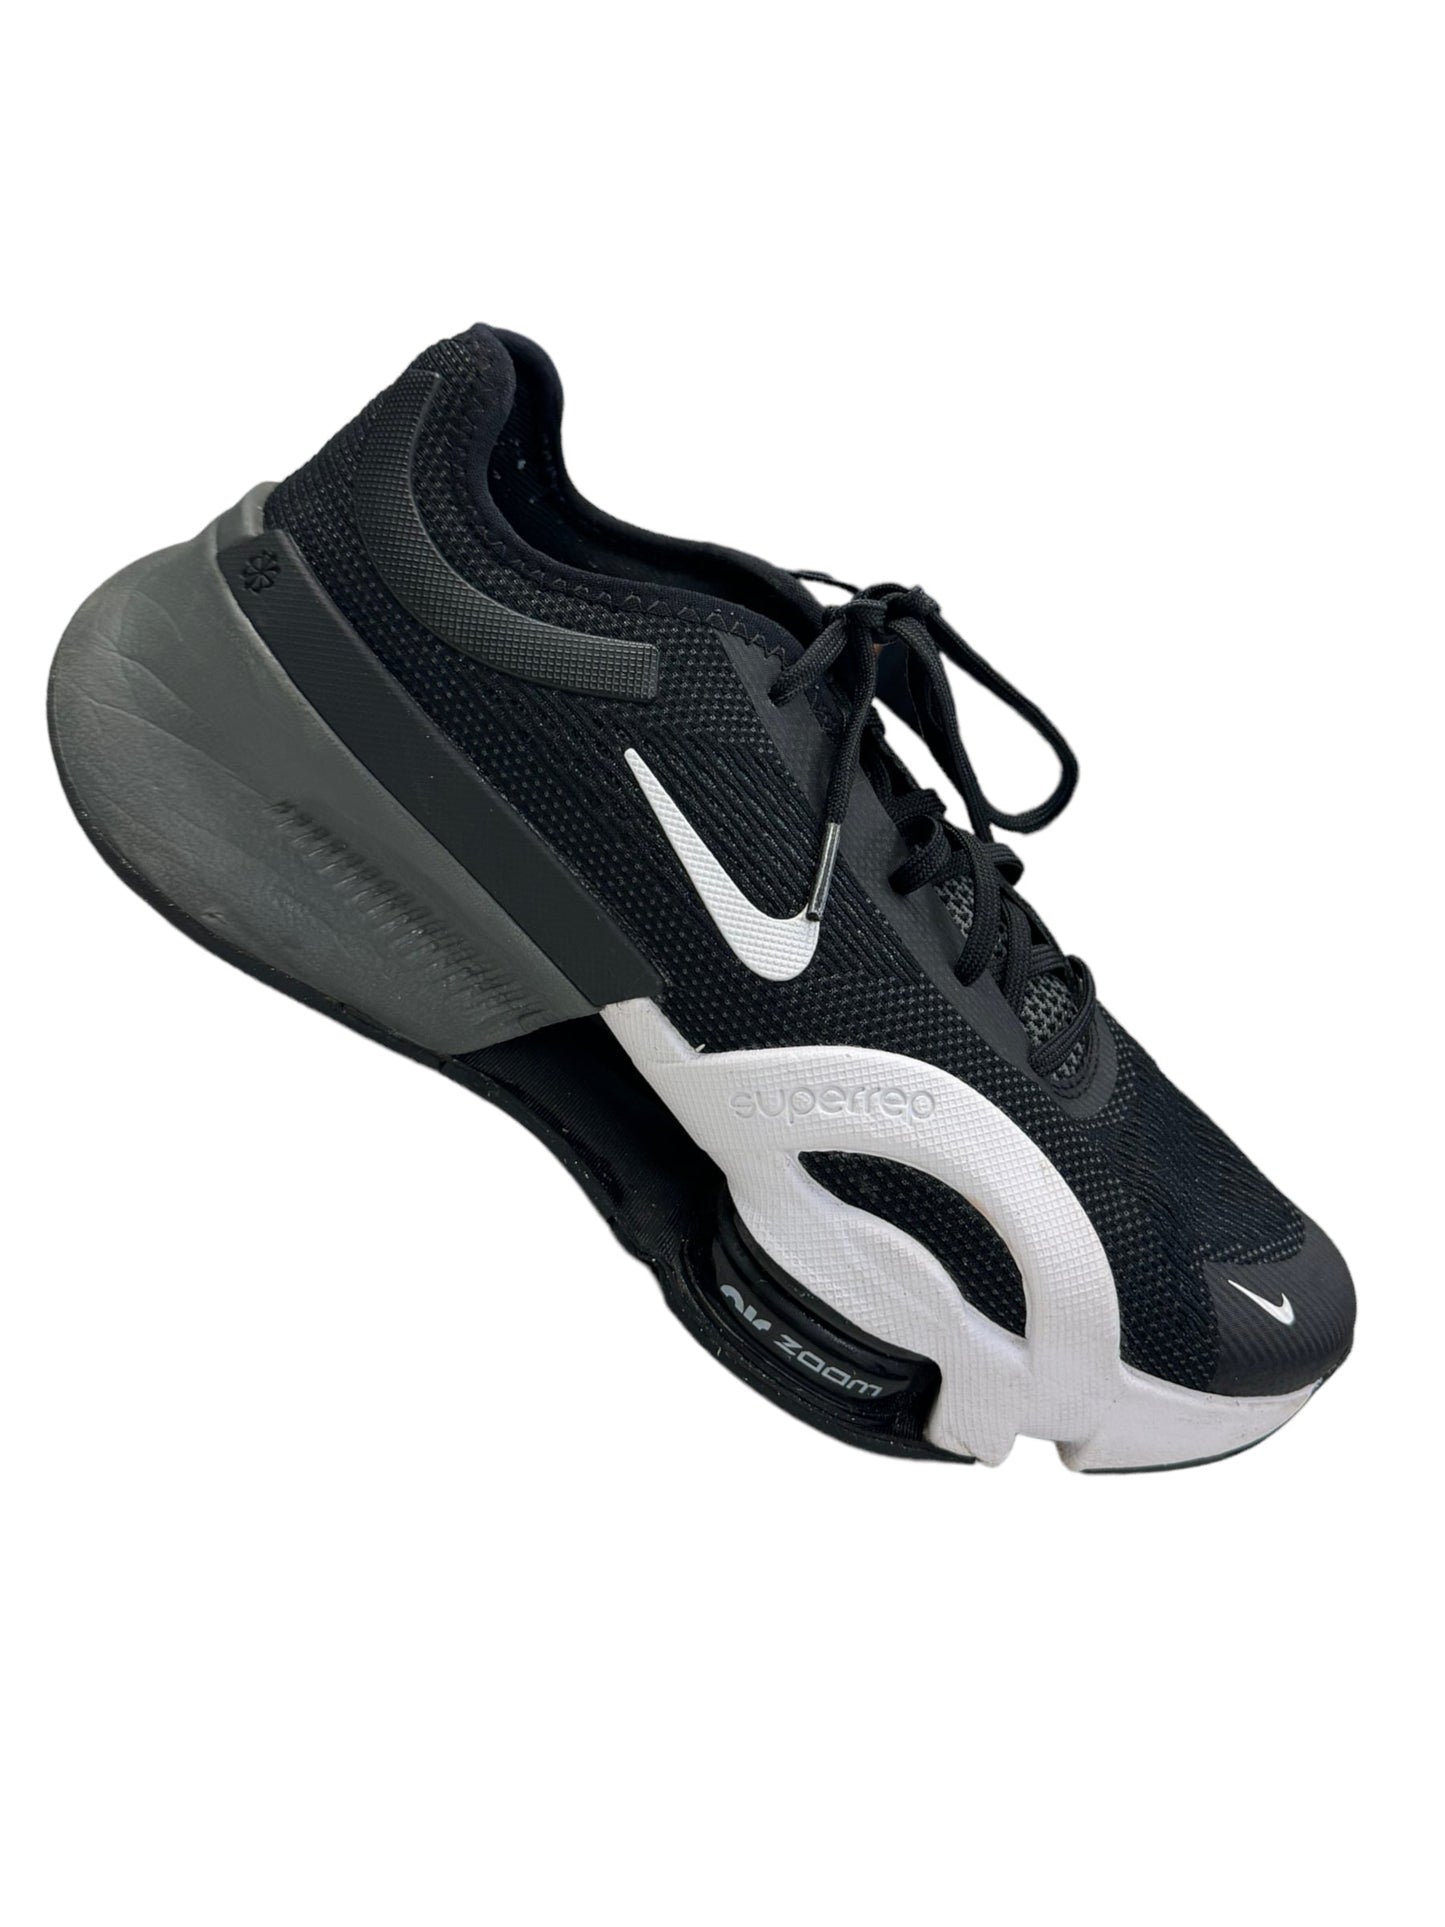 Black Shoes Athletic Nike, Size 8